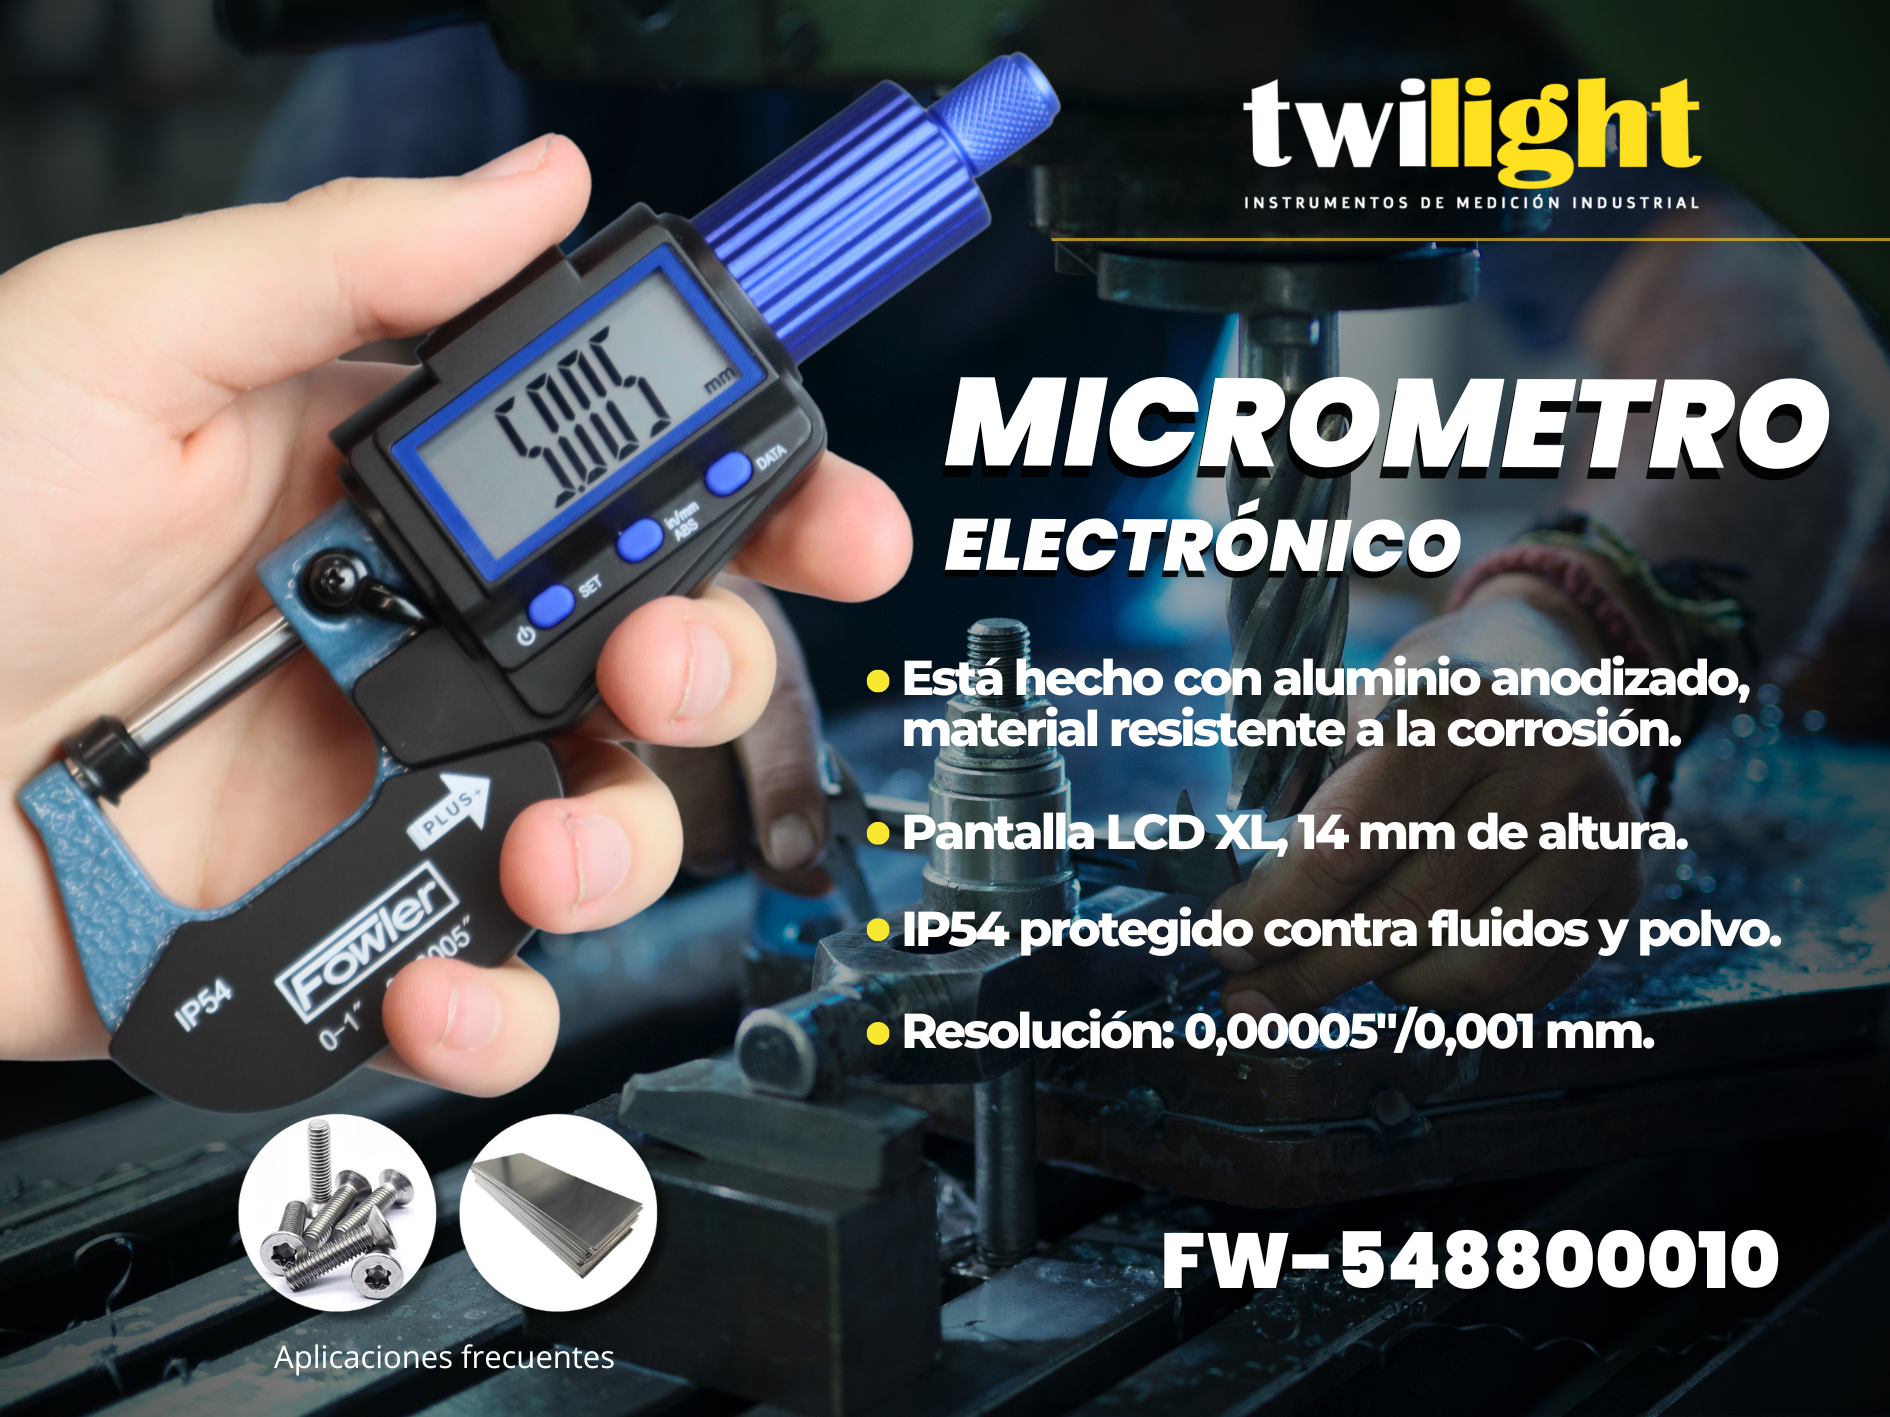 FW-548800010-68-micrometro-electro-nico-1-png